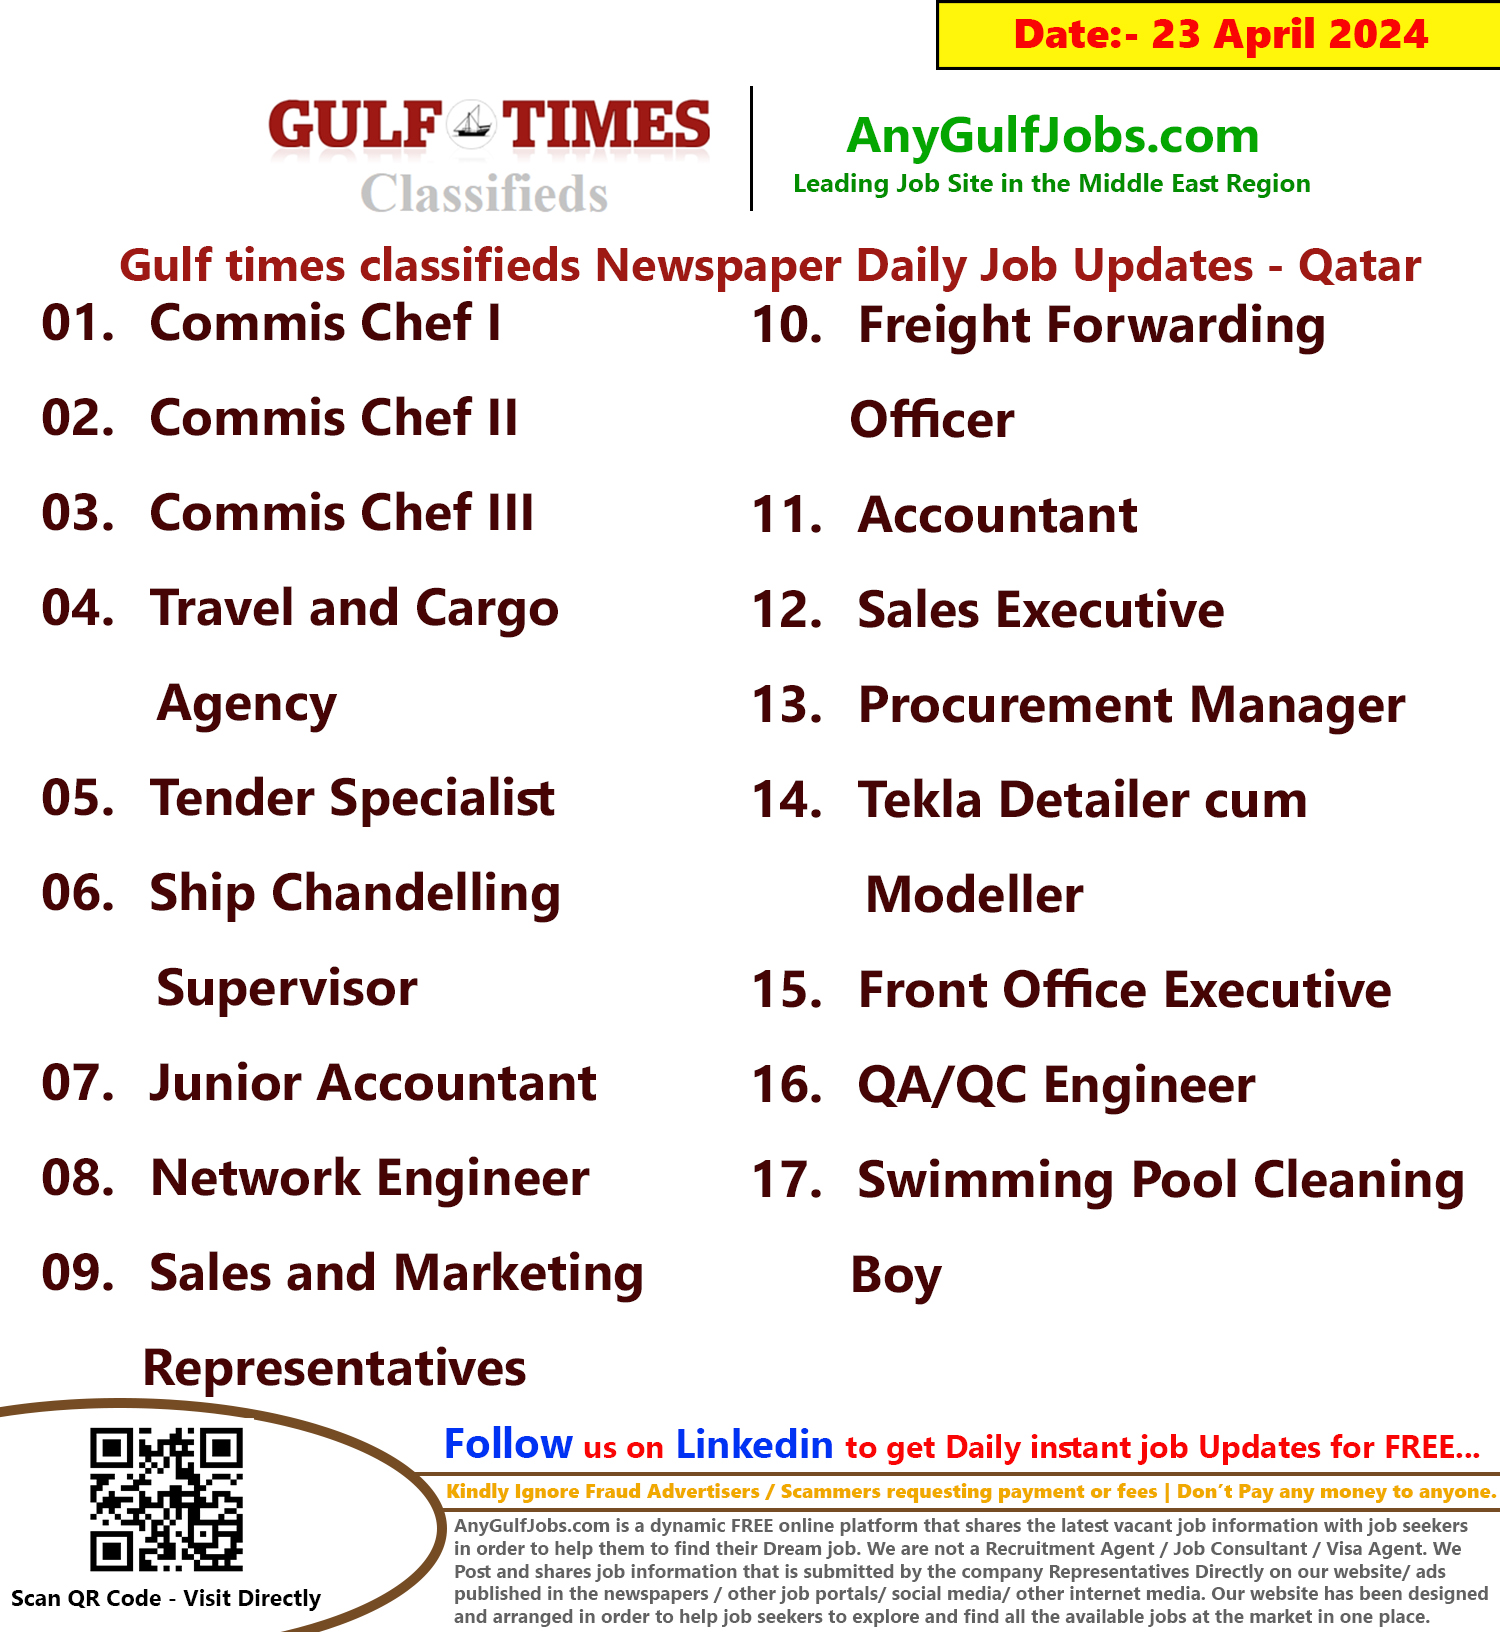 Gulf Times Classifieds Job Vacancies Qatar - 23 April 2024